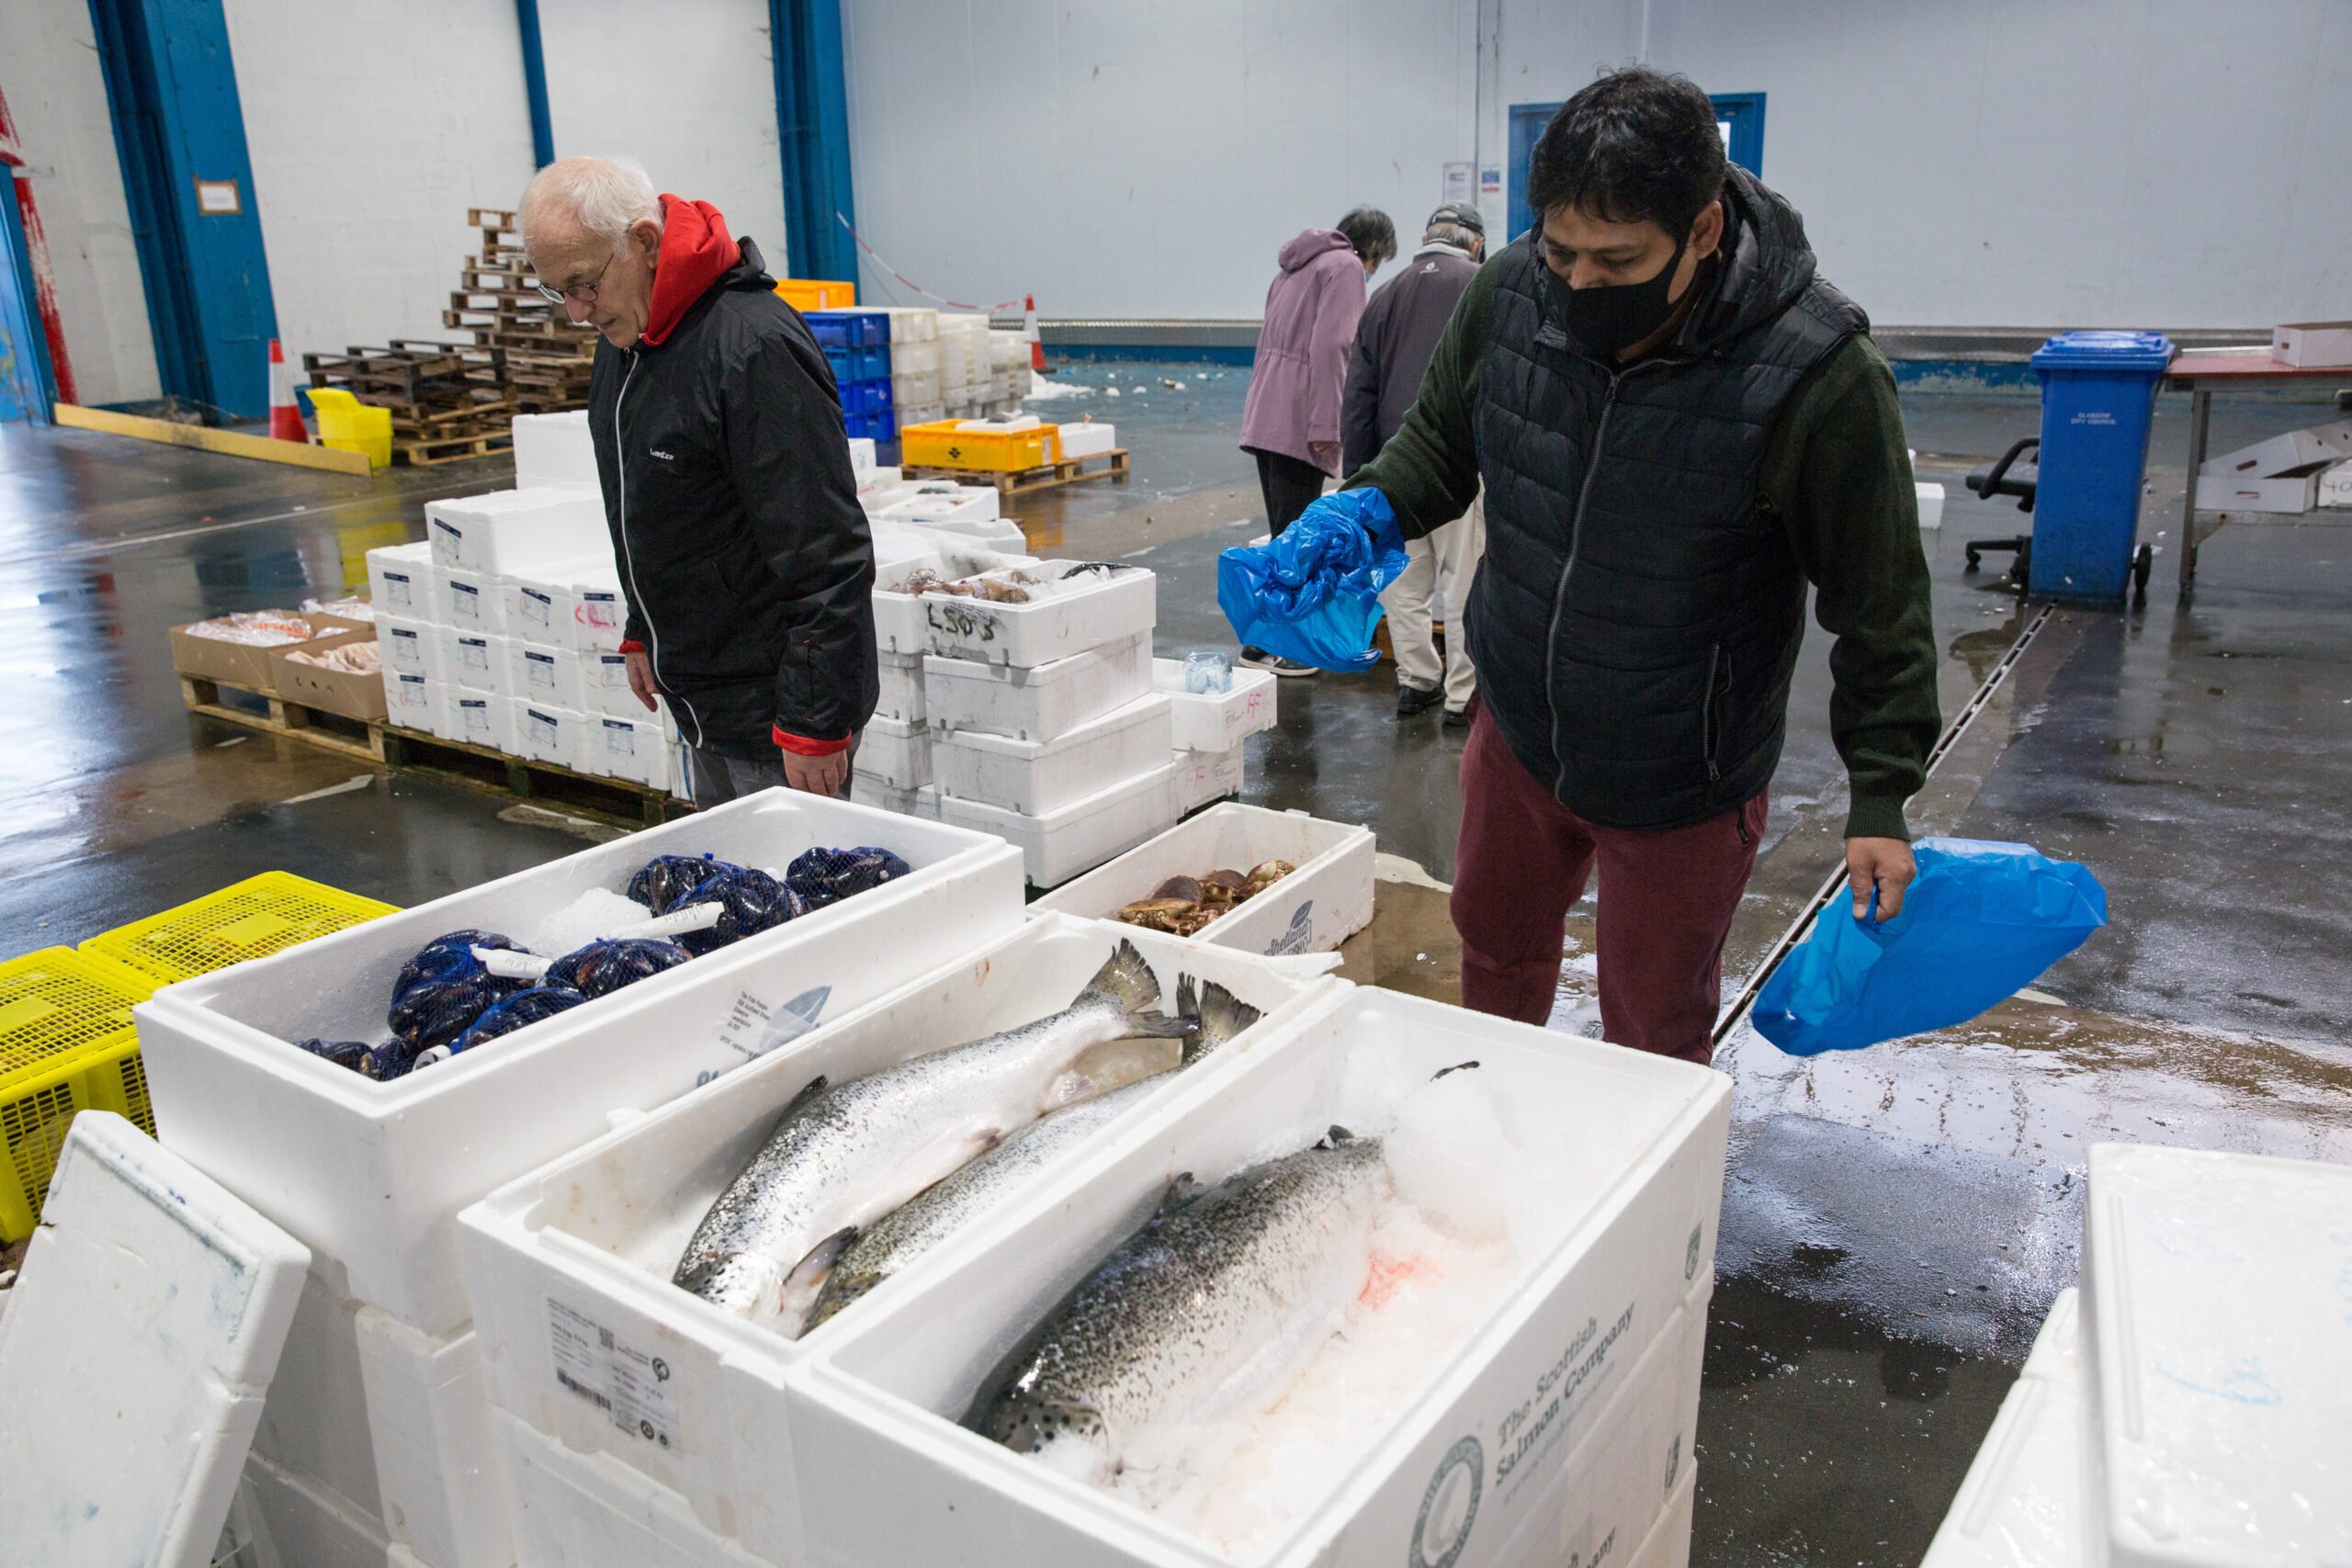 Οι σκωτσέζοι ψαράδες εκφορτώνουν ψάρια στη Δανία για να αποφύγουν τη γραφειοκρατία μετά το Brexit